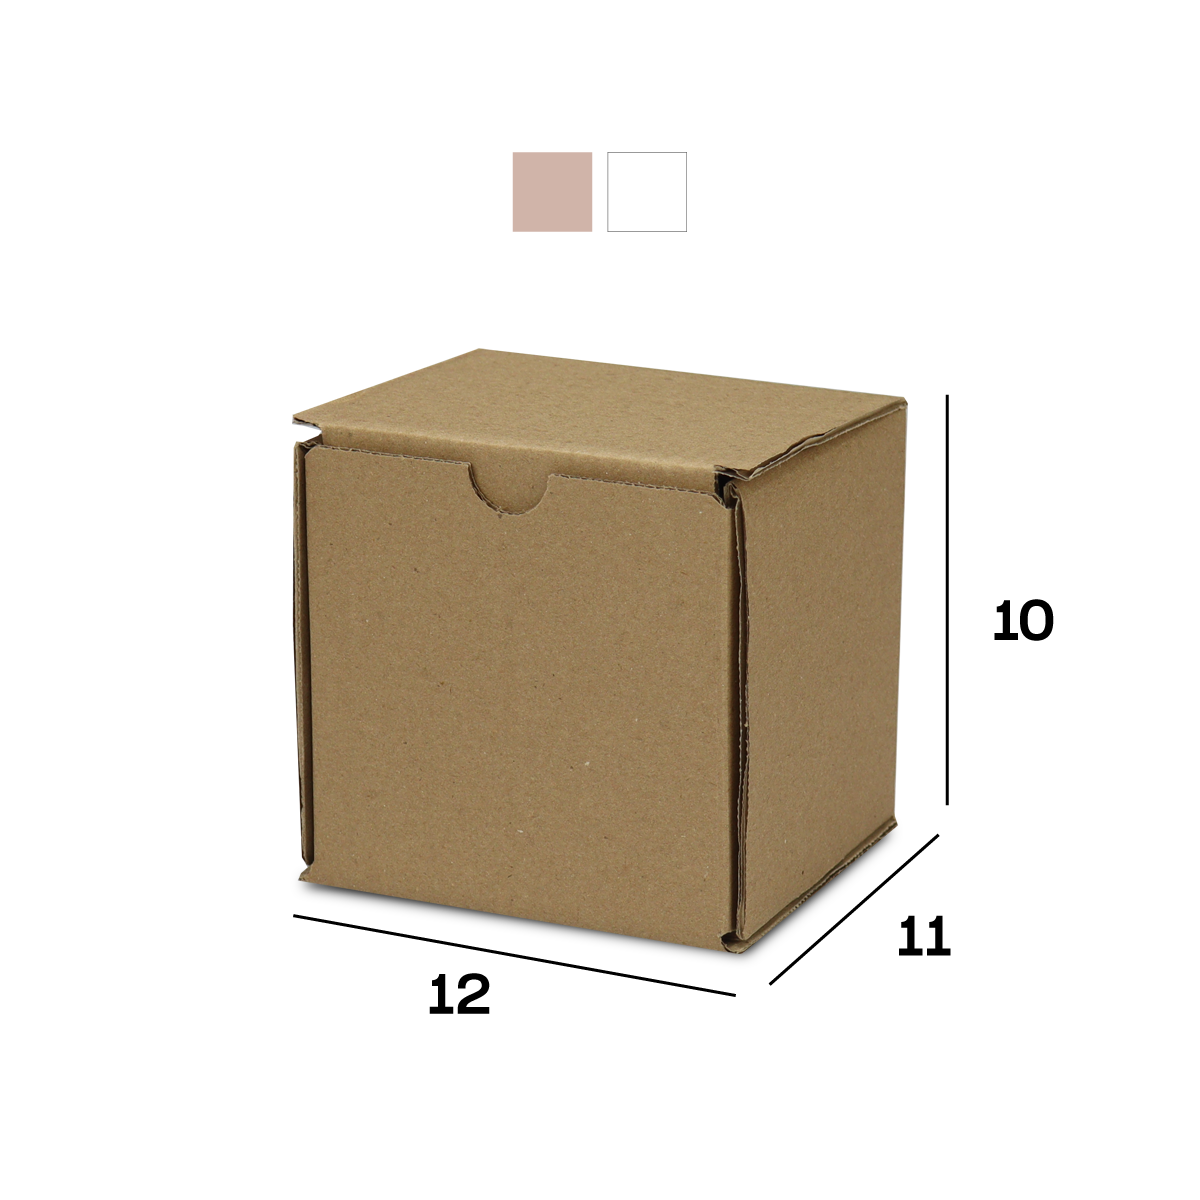 Caixa de Papelão Sedex 17 (12x11x10) Lisa